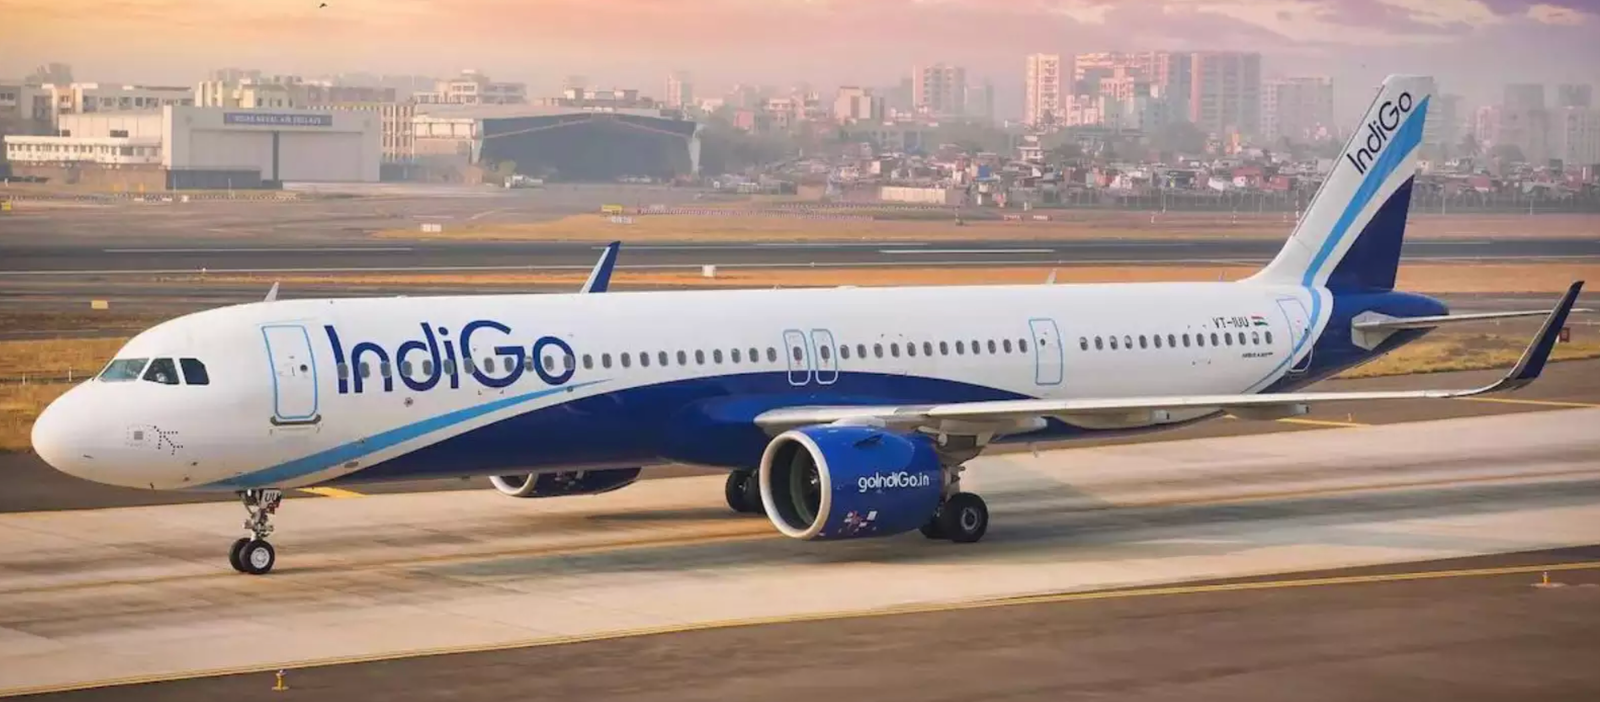 नागपुर हवाई अड्डे पर पायलट की आपातकालीन मौत